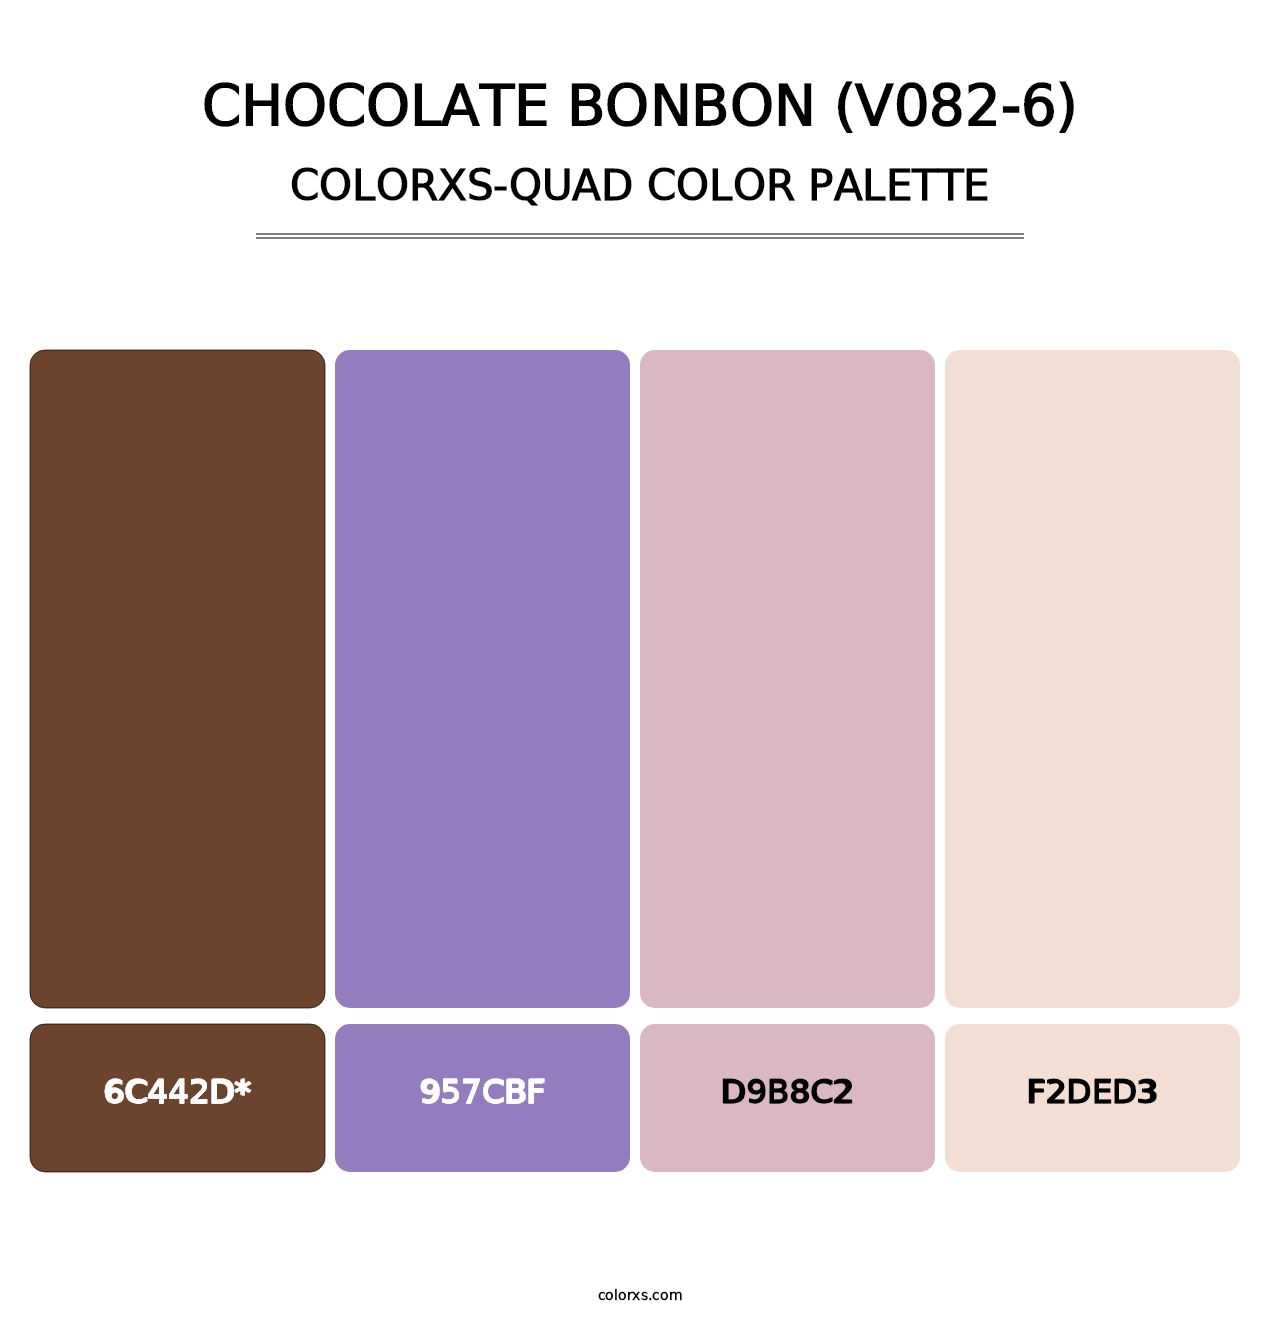 Chocolate Bonbon (V082-6) - Colorxs Quad Palette